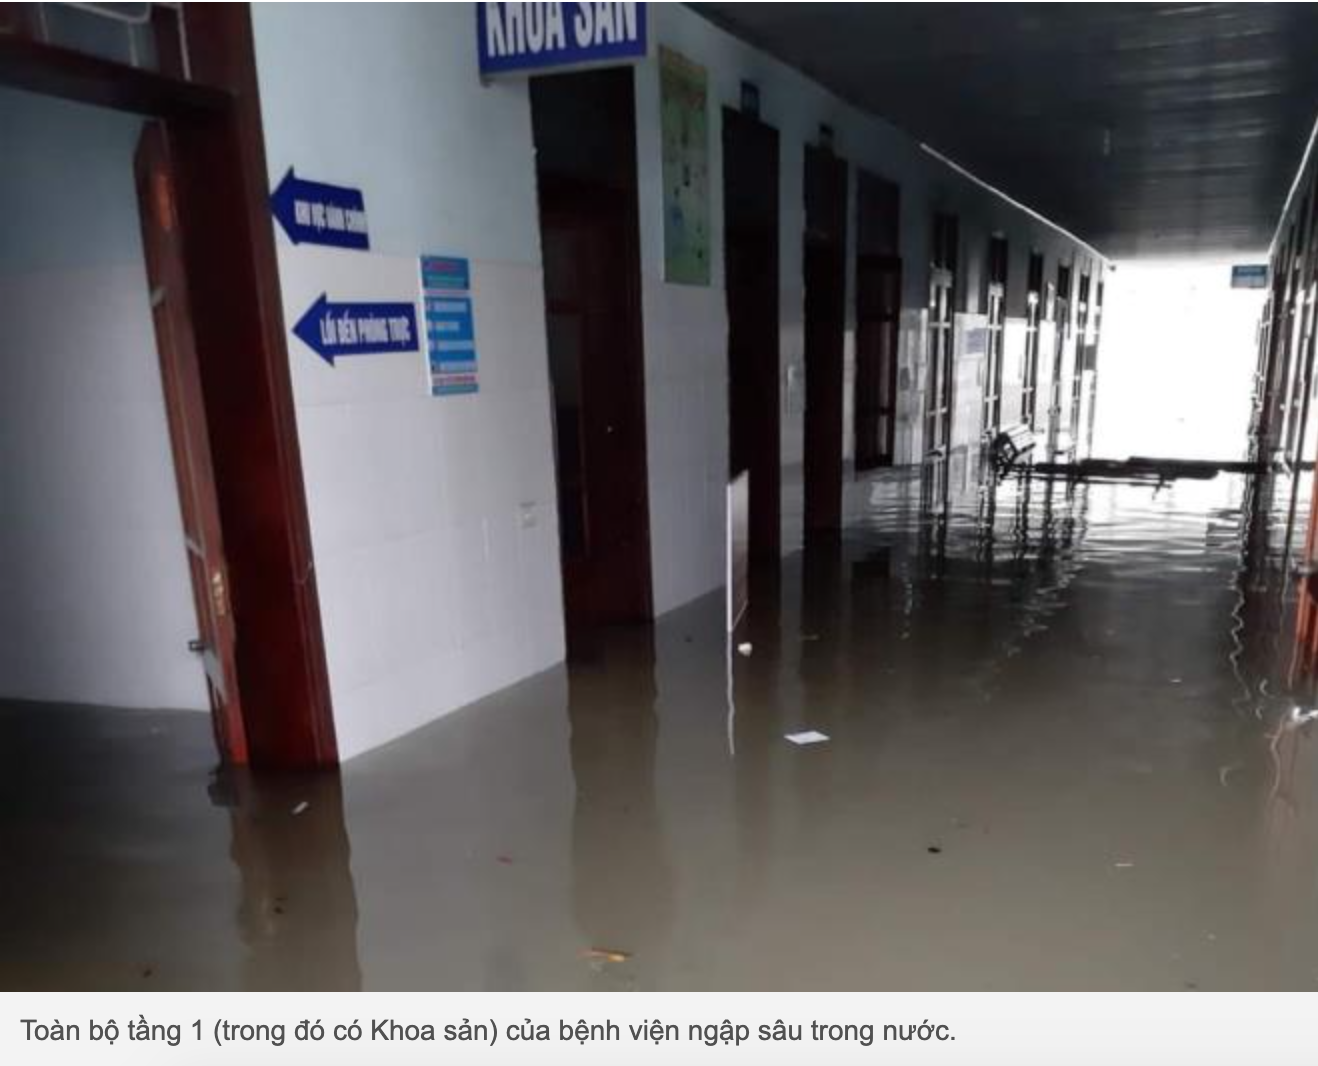 Bệnh viện ngập sâu trong nước.